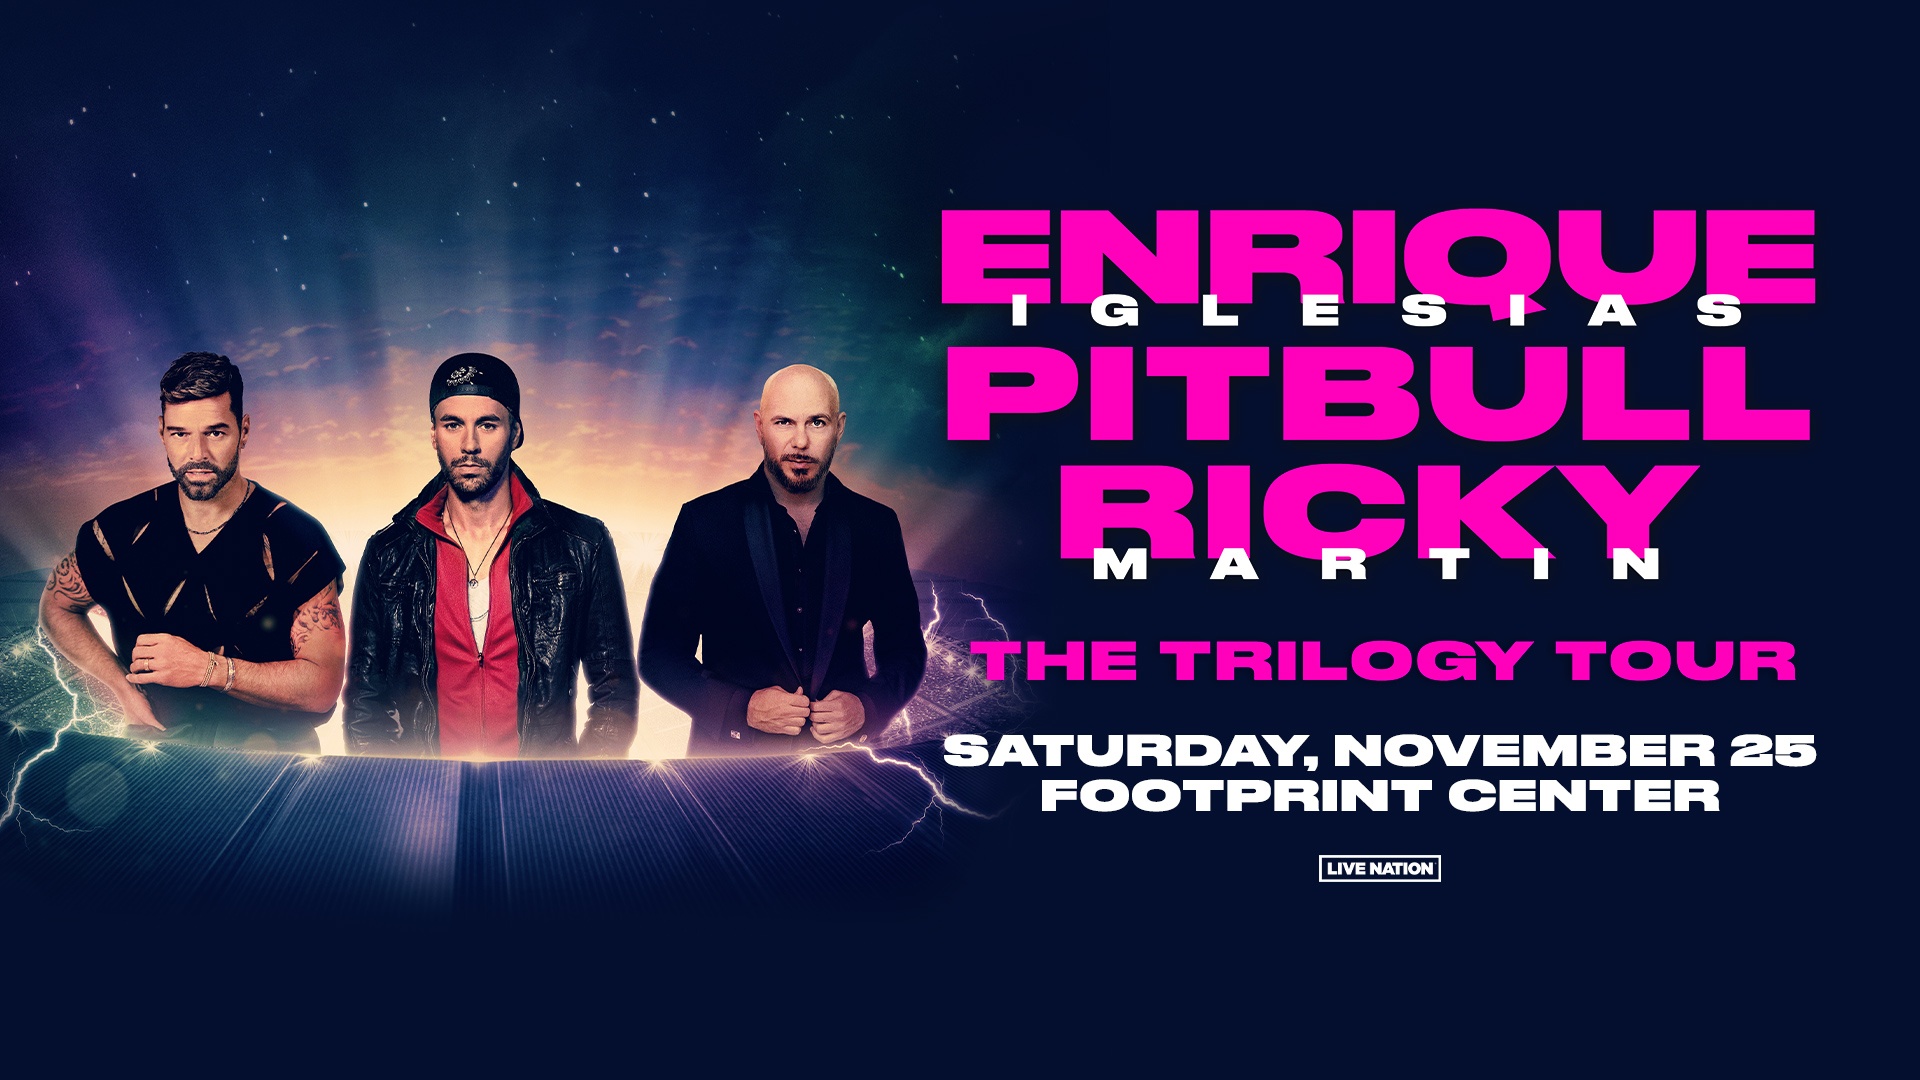 Enrique Iglesias Ricky Martin Pitbull The Trilogy Tour Atlas